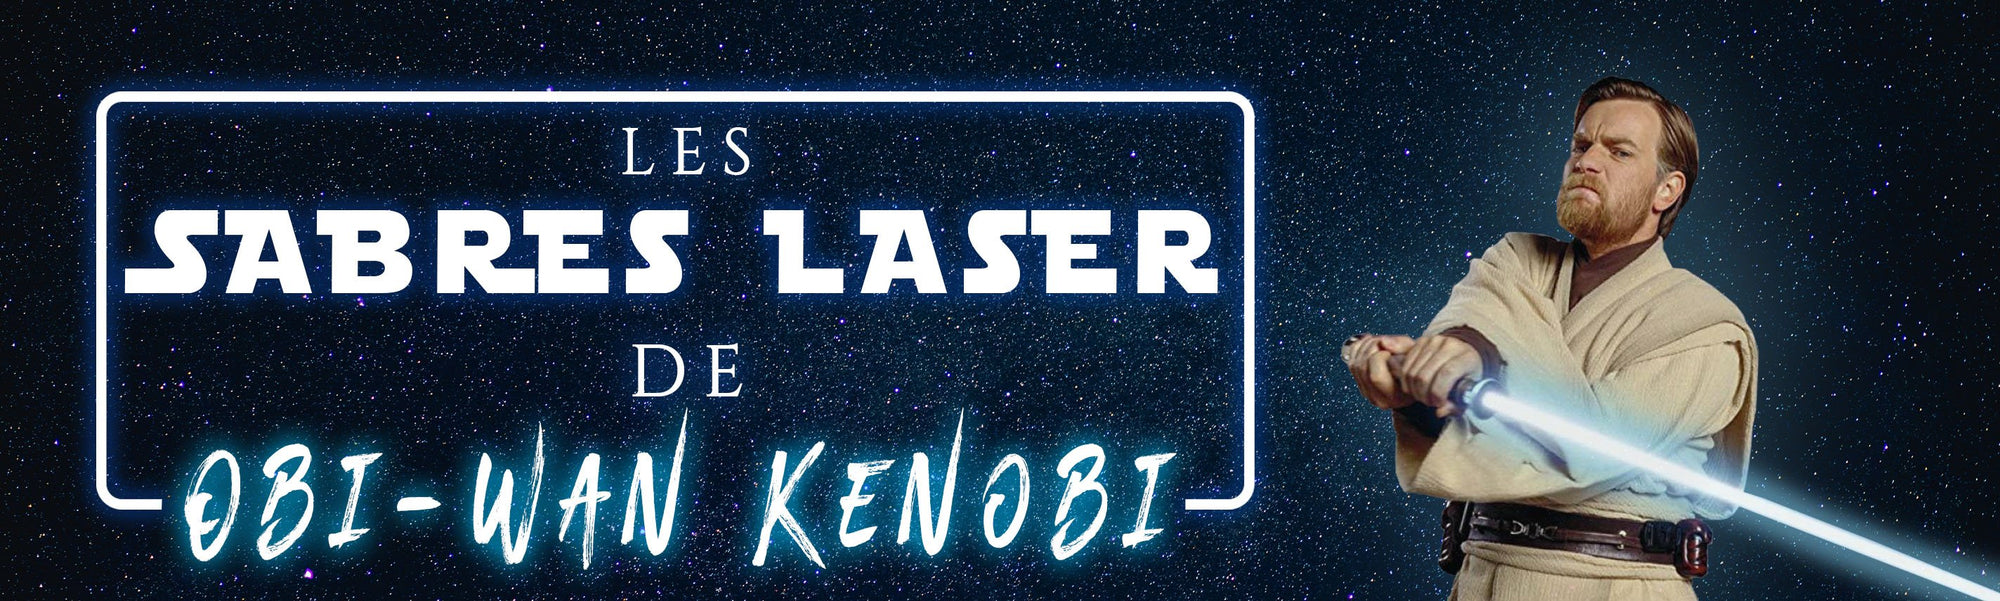 Sabres Laser Obi-Wan